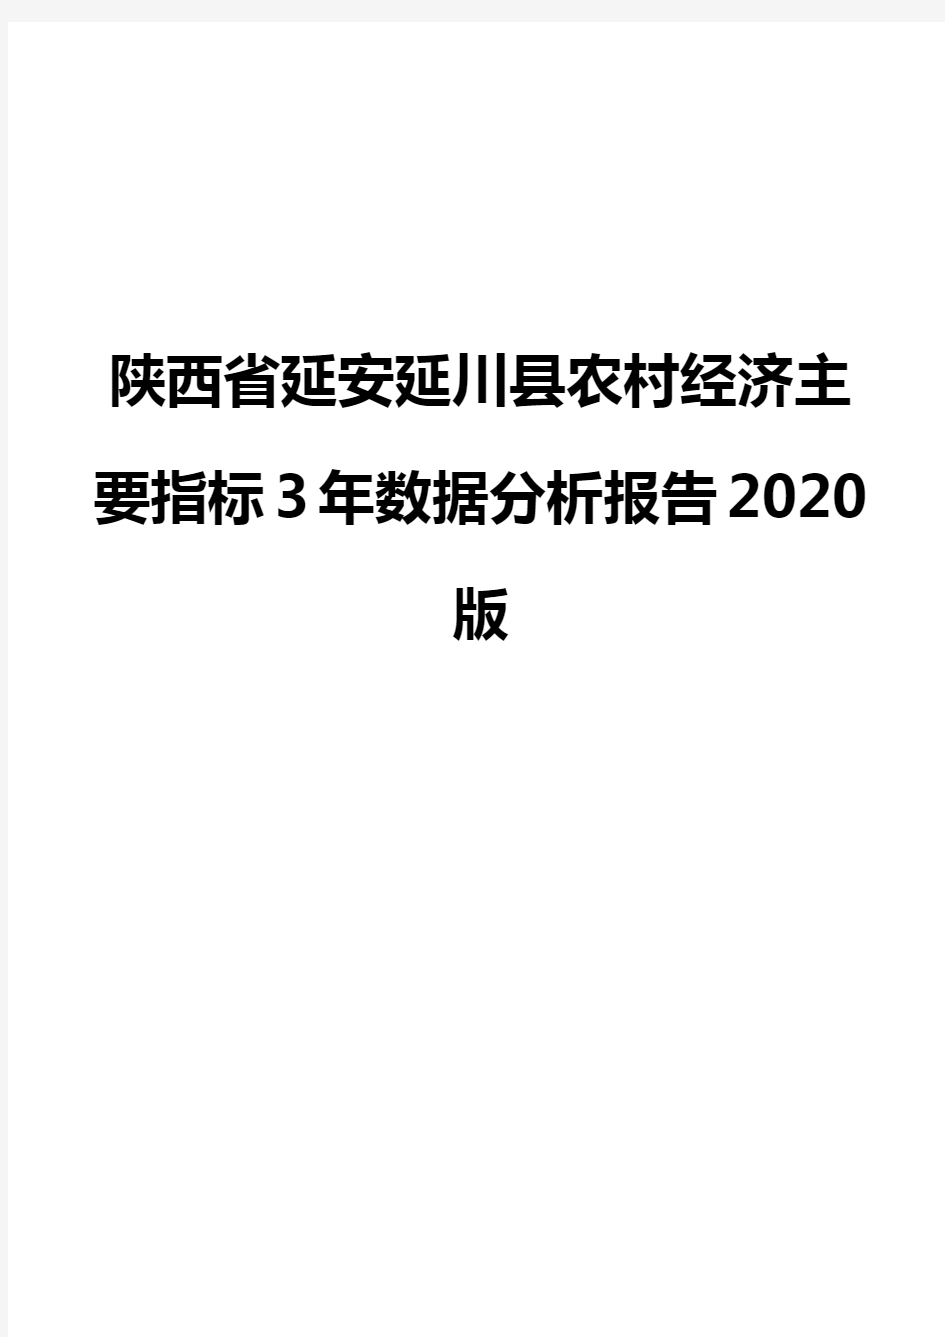 陕西省延安延川县农村经济主要指标3年数据分析报告2020版